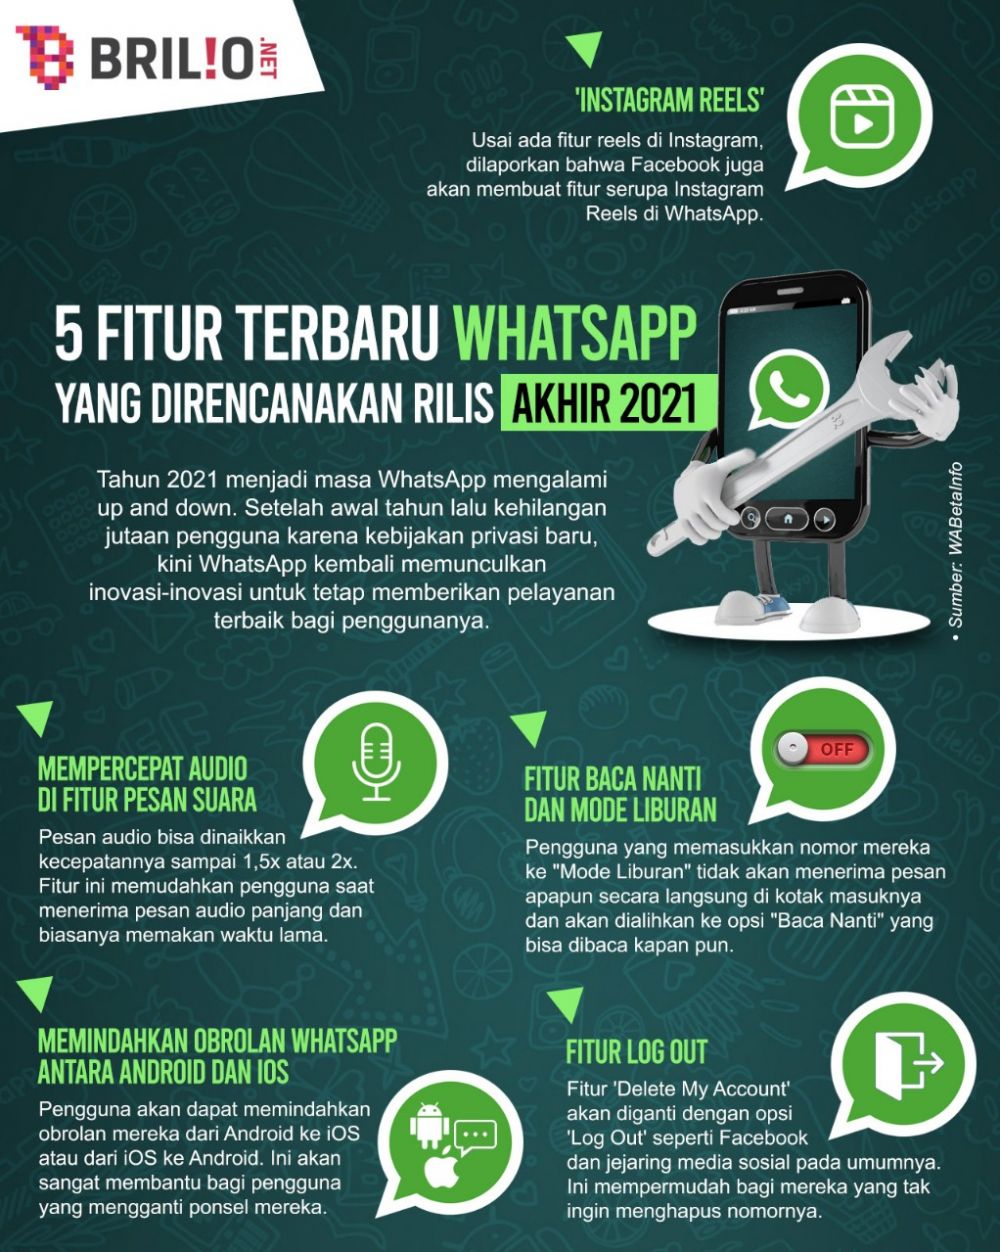 7 Fitur WhatsApp ini rilis akhir 2021, bakal ada 'Instagram Reels'